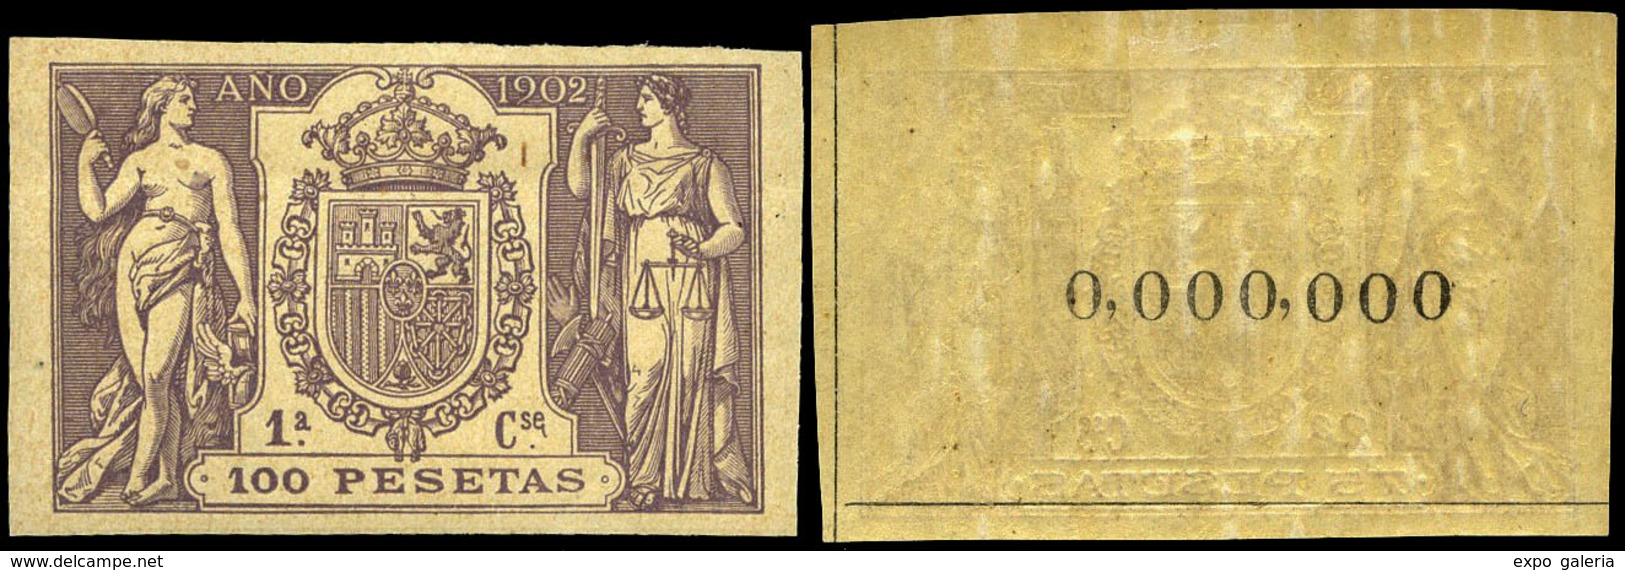 Alemany 499/509 - 1902. Pólizas. 11 Valores. Serie Completa Con Numeración 000.000 Al Dorso. Goma Original - Steuermarken